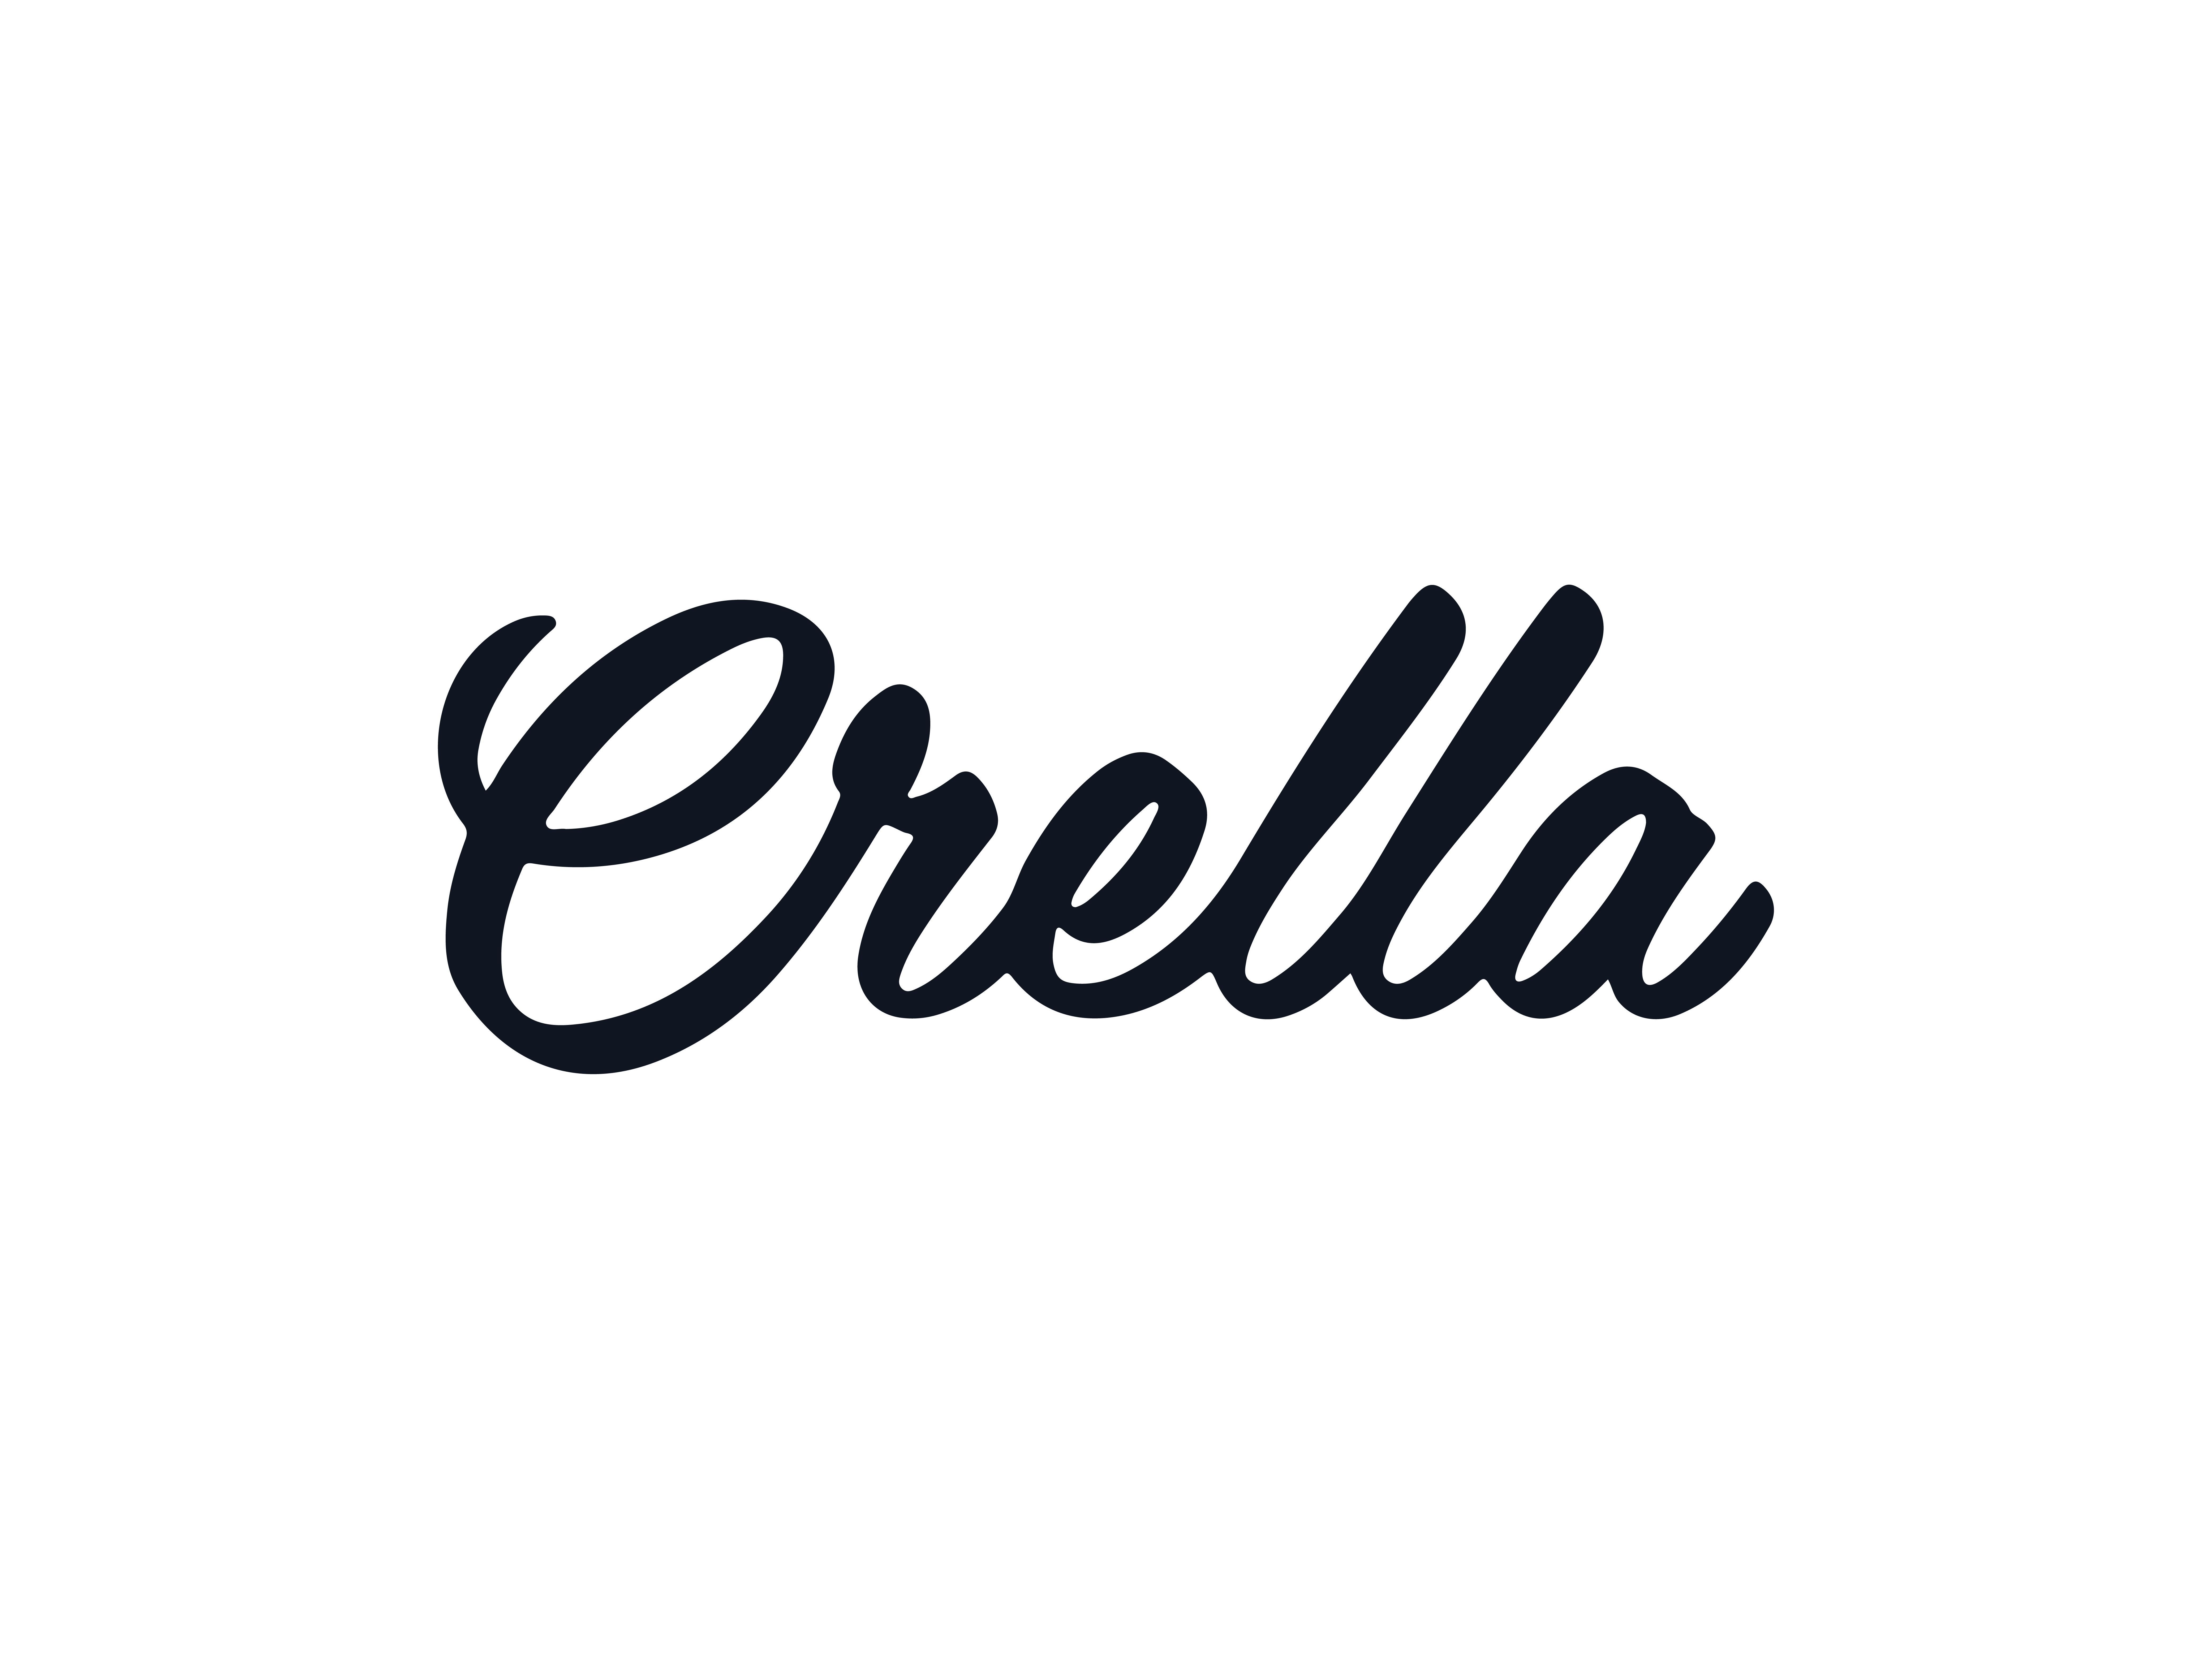 Crella - Logo